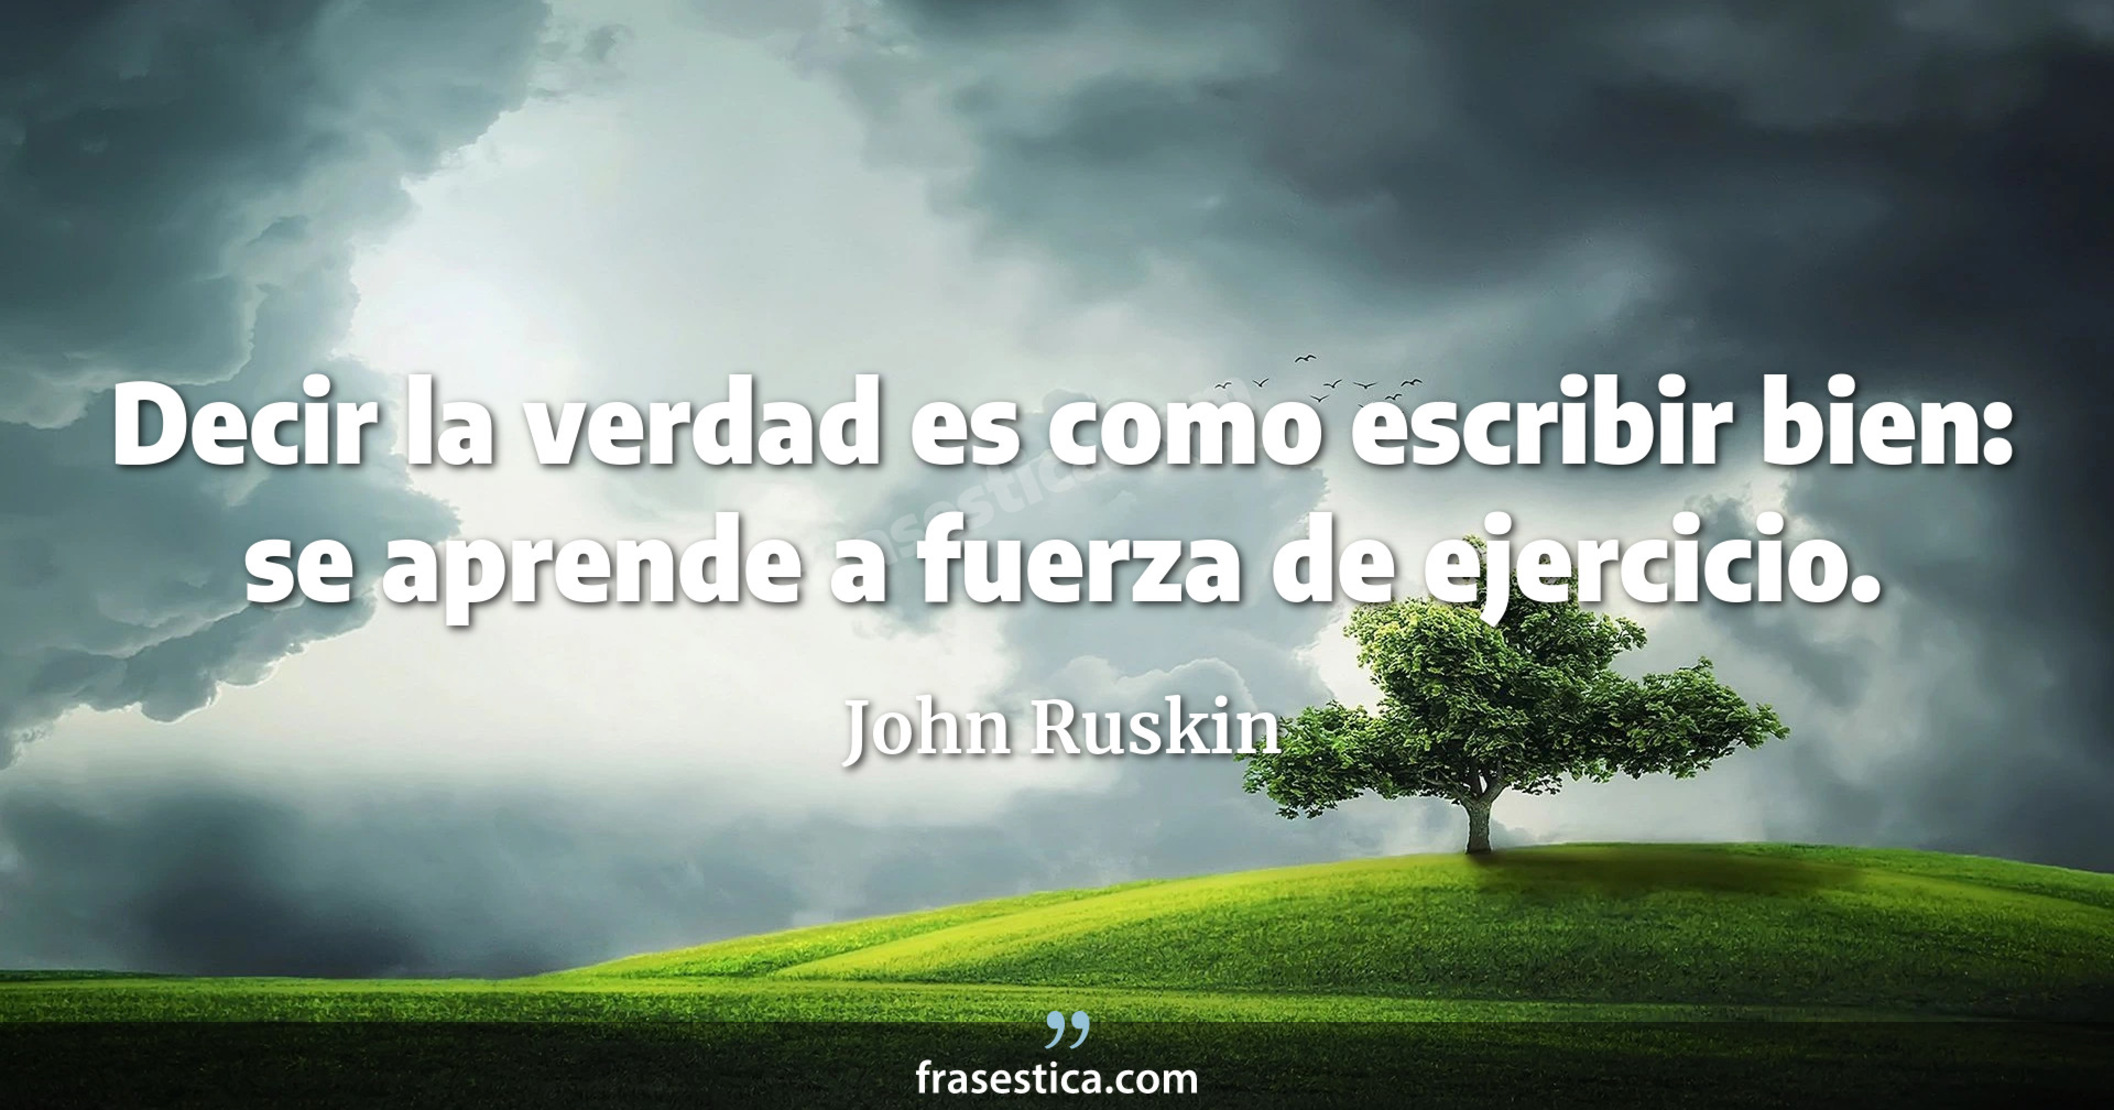 Decir la verdad es como escribir bien: se aprende a fuerza de ejercicio. - John Ruskin